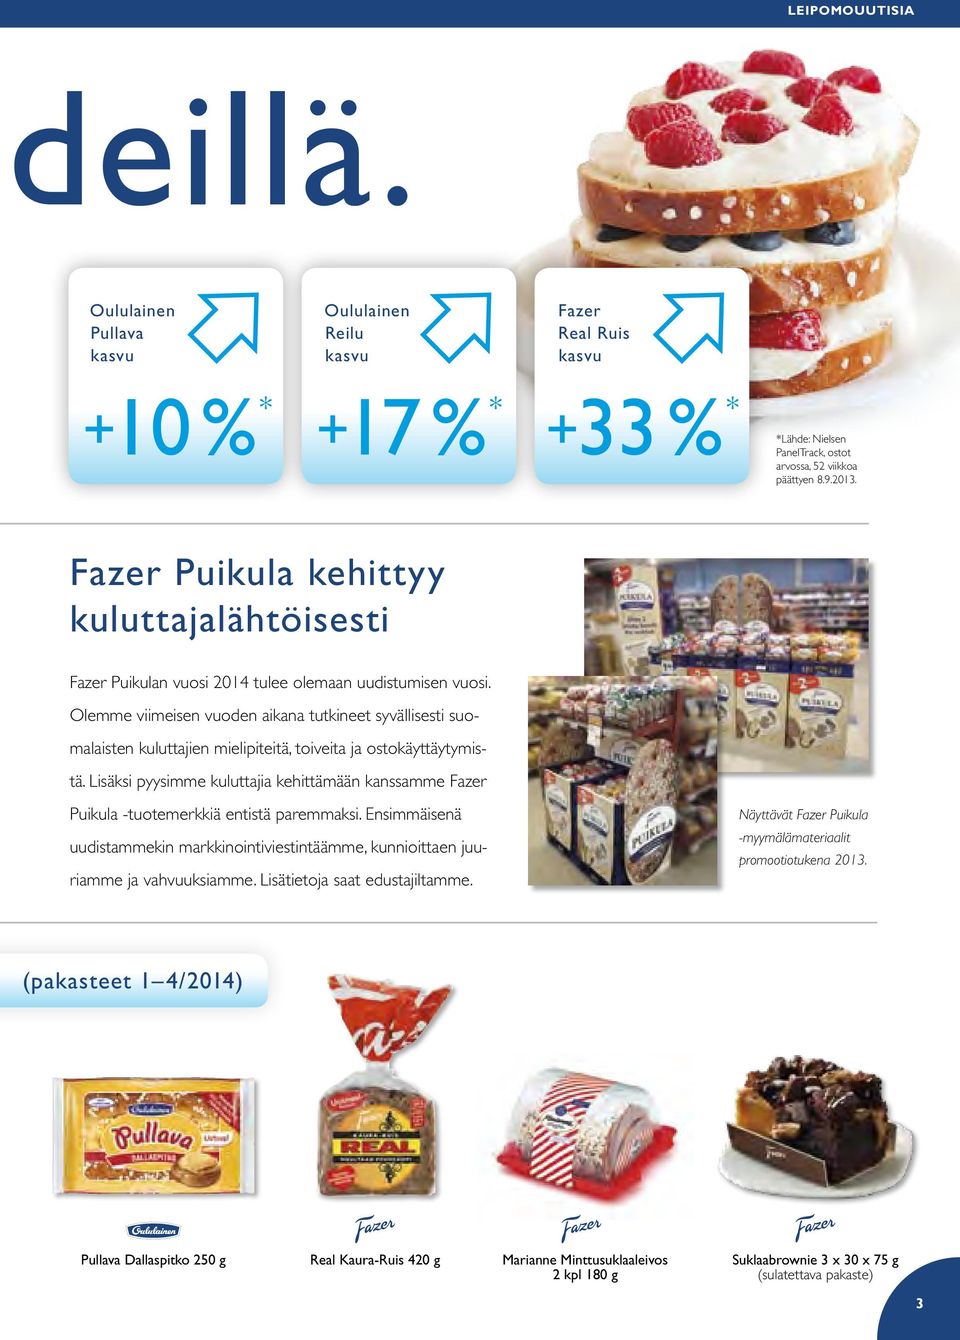 Olemme viimeisen vuoden aikana tutkineet syvällisesti suomalaisten kuluttajien mielipiteitä, toiveita ja ostokäyttäytymistä.